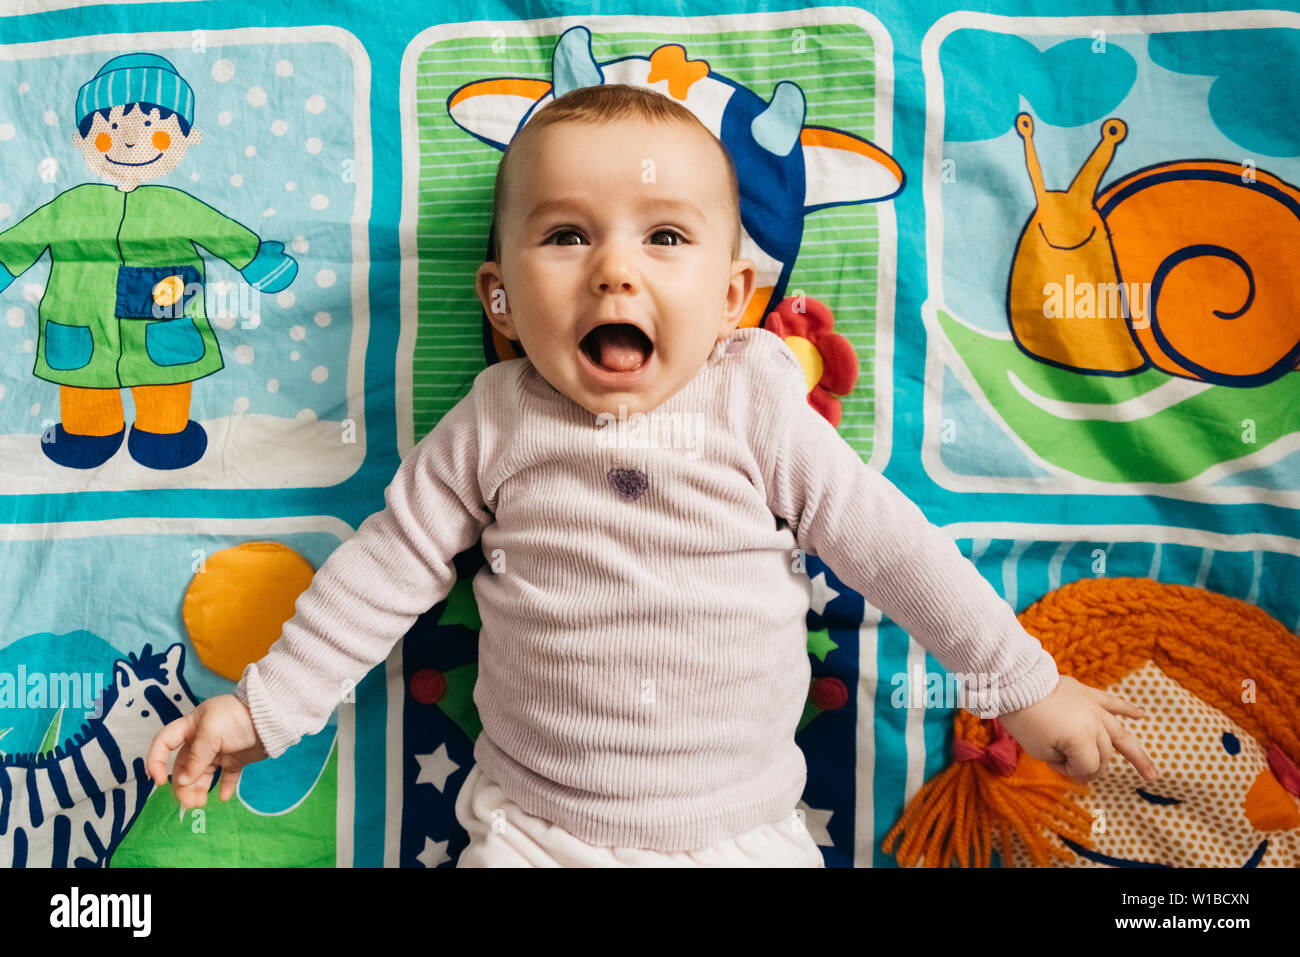 20 actividades de estimulación temprana que harán brillar a tus bebés